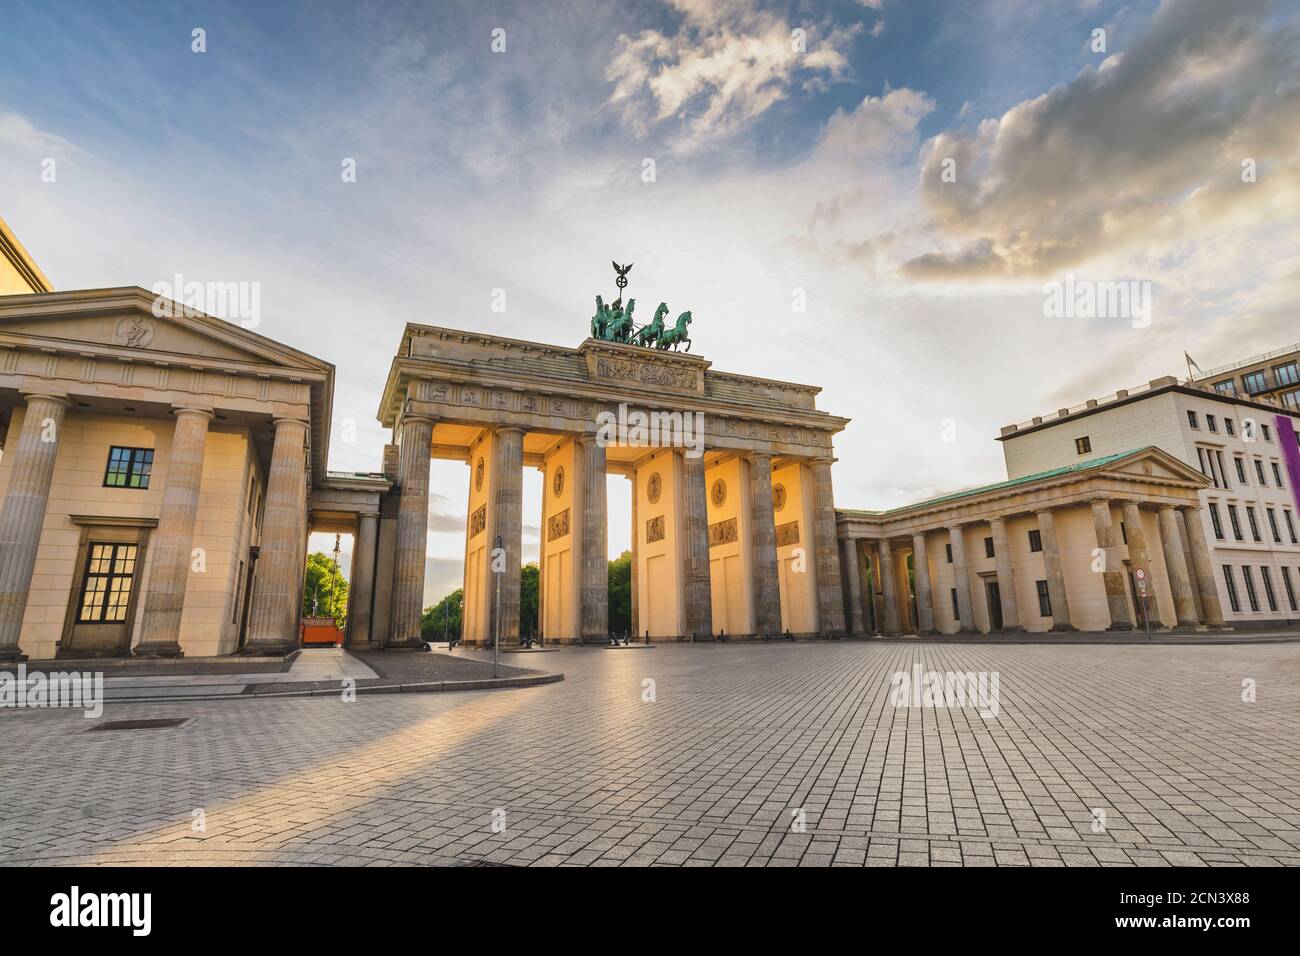 Berlín Alemania, horizonte de la ciudad puesta de sol en la Puerta de Brandenburgo (Brandenburger Tor) no vacía nadie Foto de stock